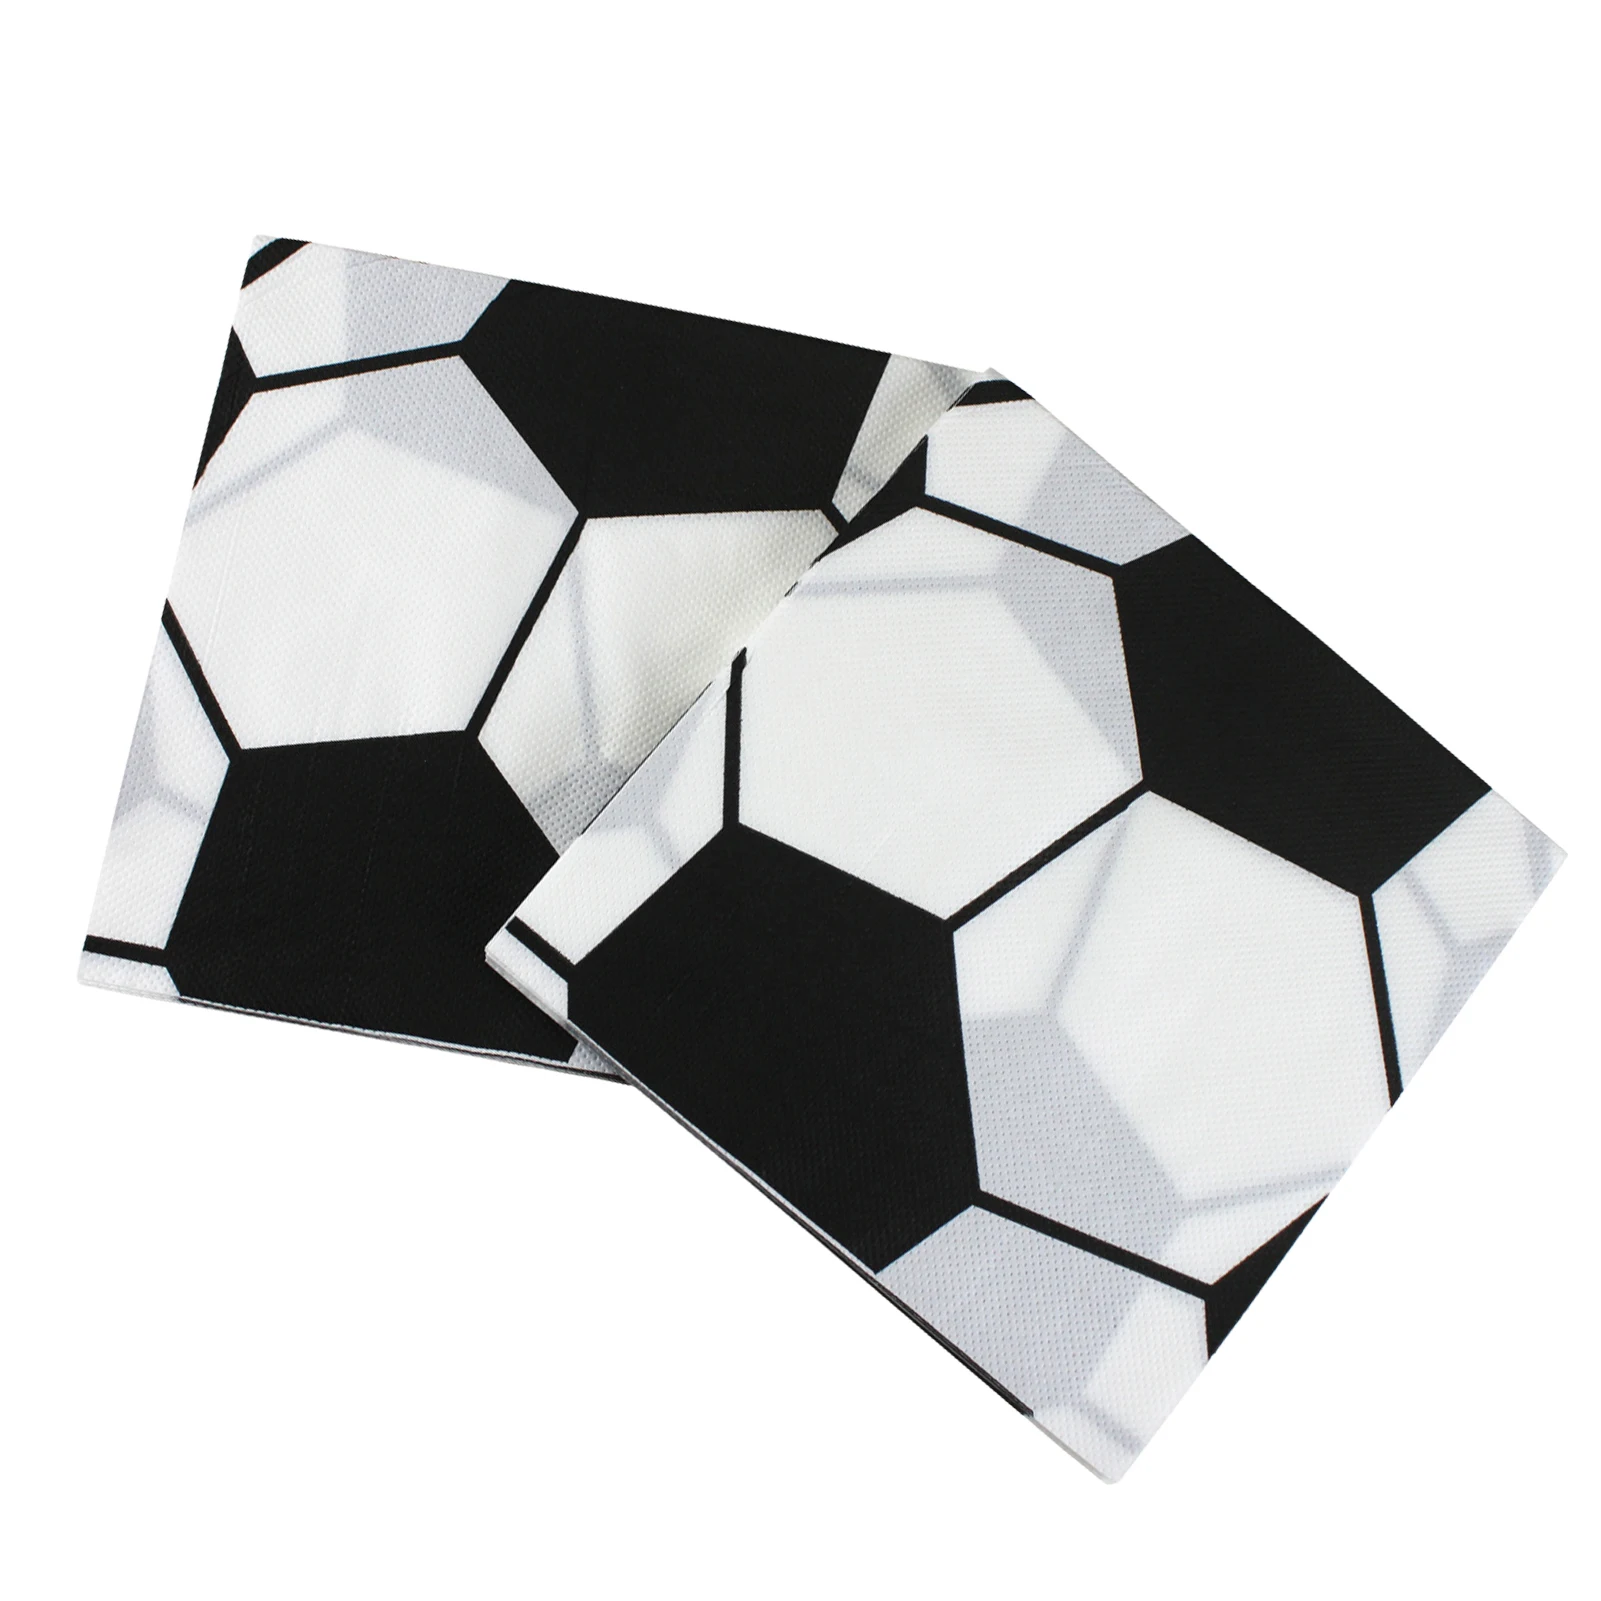 

3D футбольный мяч, столовая посуда на тему мира по футболу, бумажные салфетки, футбольный стиль, набор салфеток для детей или взрослых